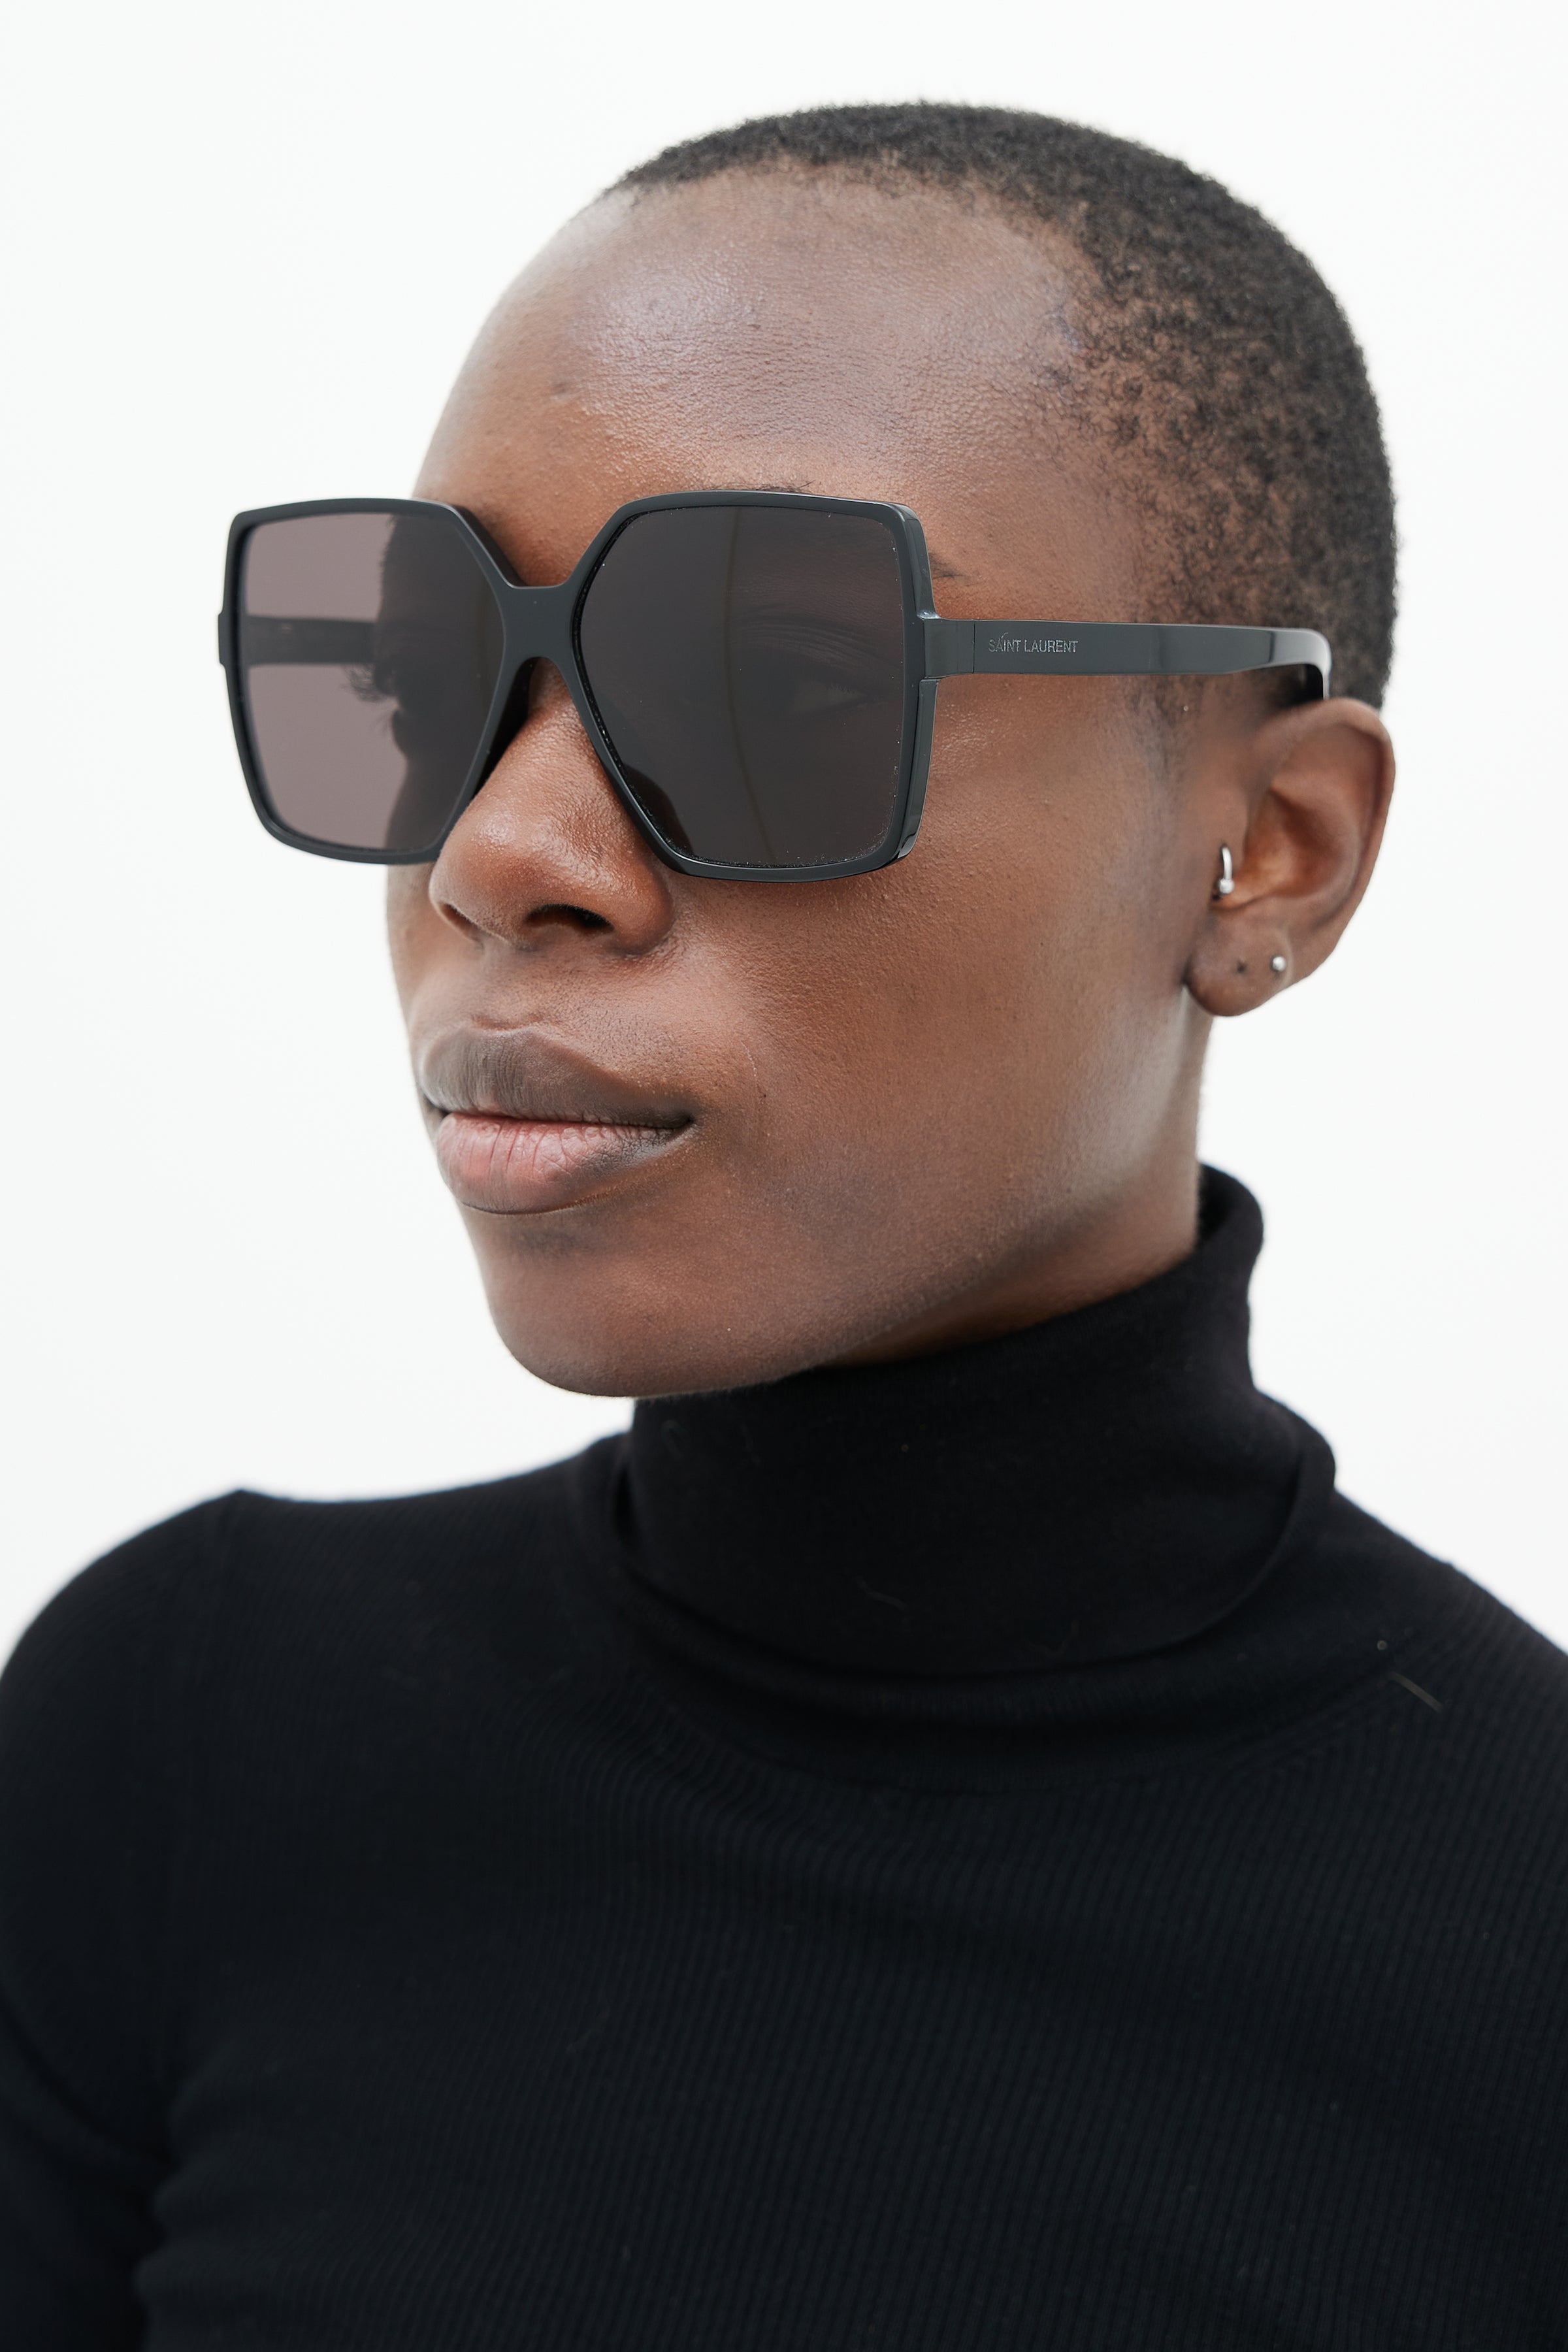 Sunglasses SAINT LAURENT SL 232 BETTY 003 63/13 Woman Ecaille square frames  Full Frame Glasses trendy 63mmx13mm 275£